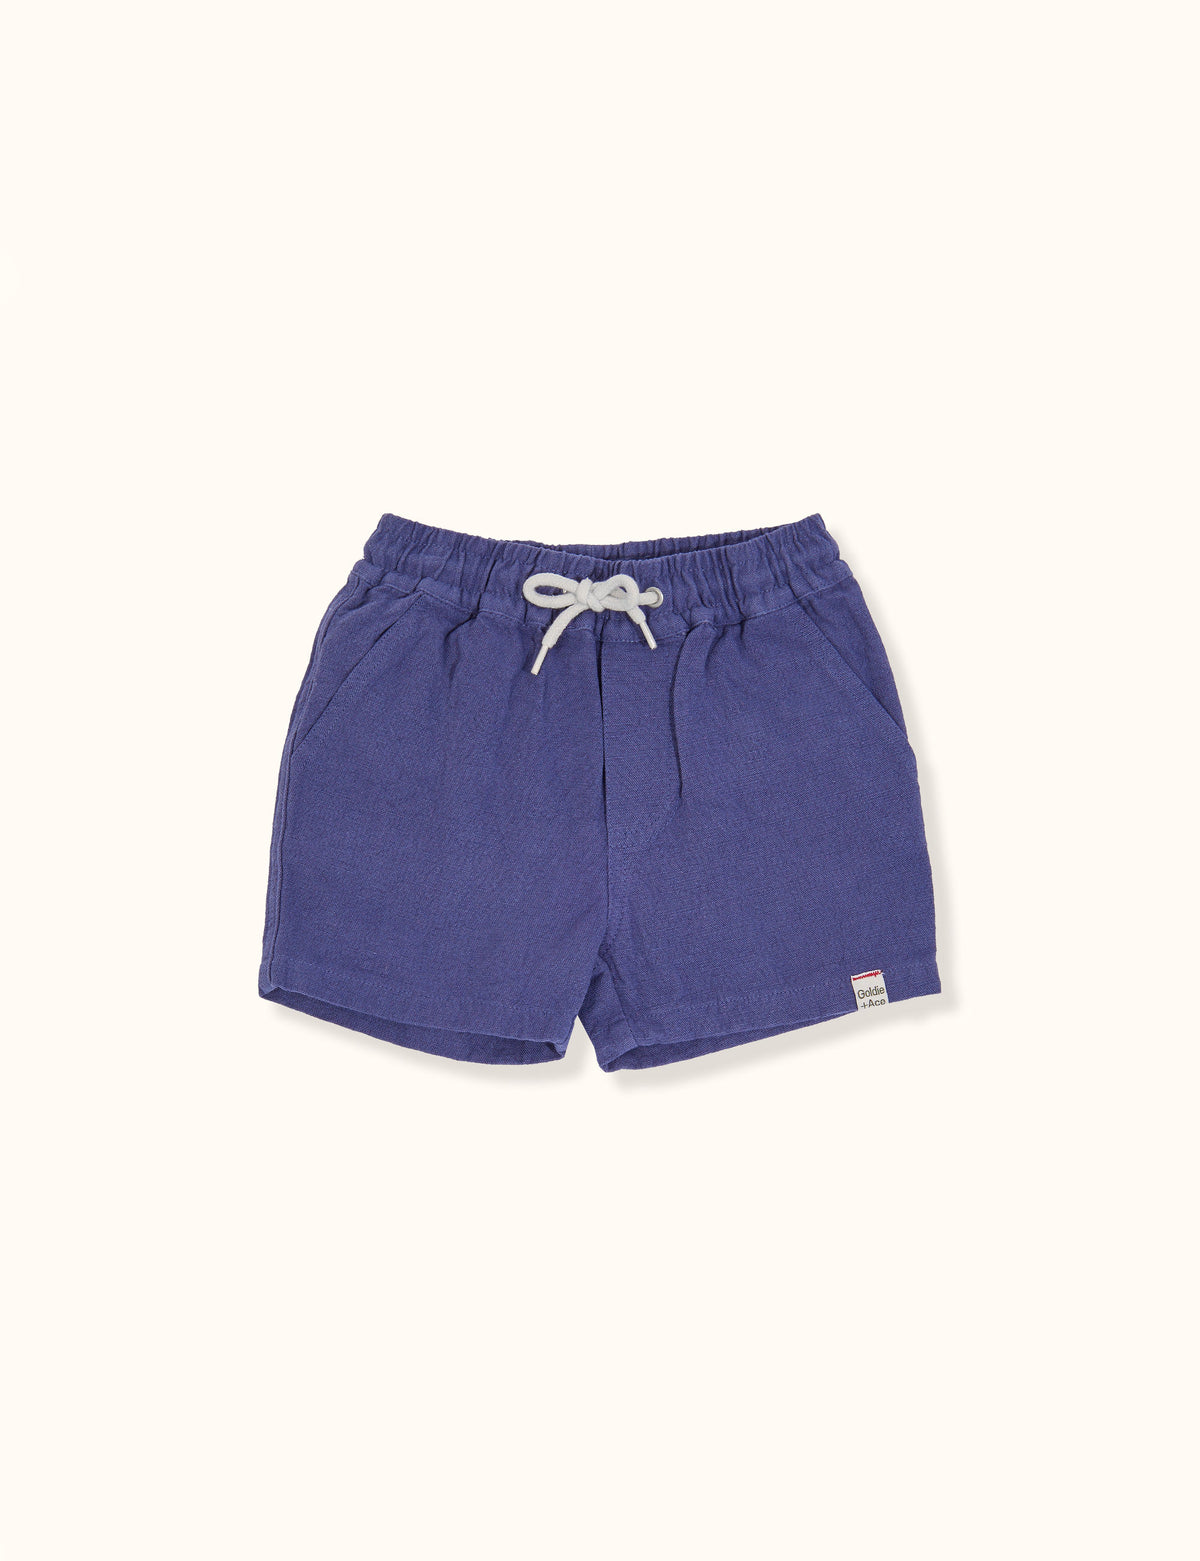 Noah Linen Cotton Shorts - Blue - Child Boutique